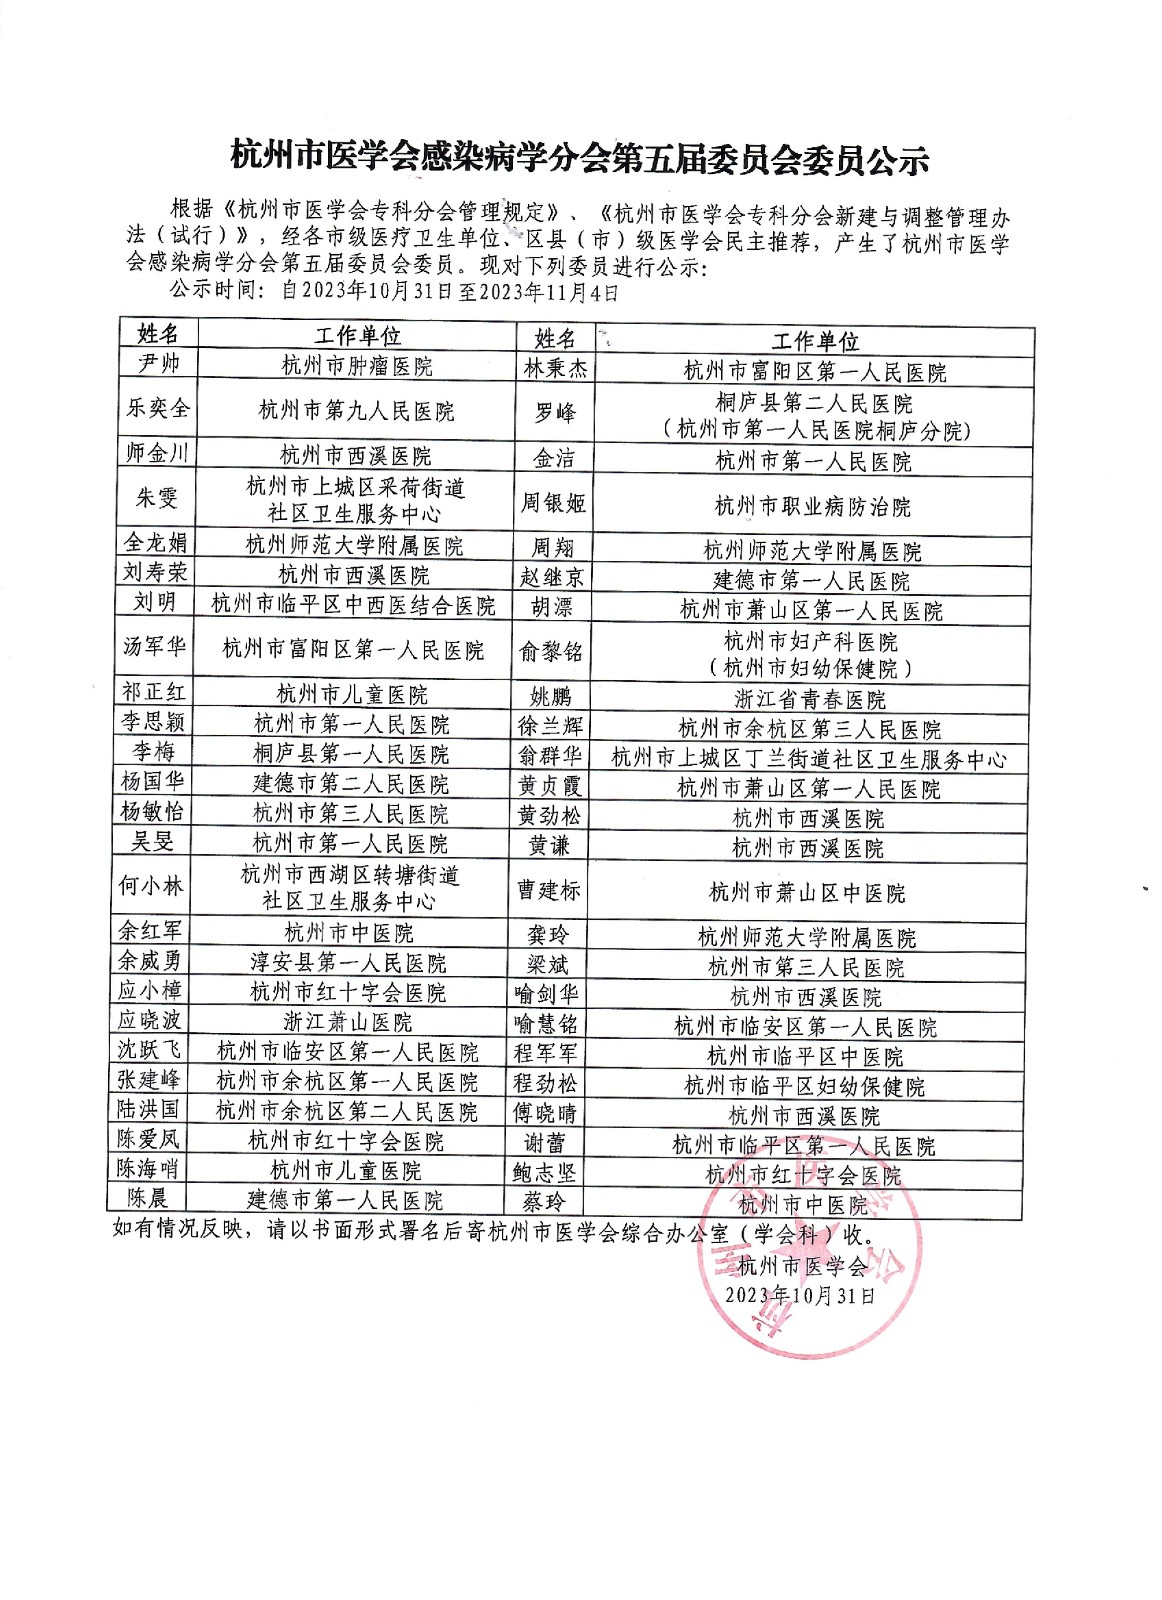 杭州市医学会感染病学分会第五届委员会委员公示.jpg